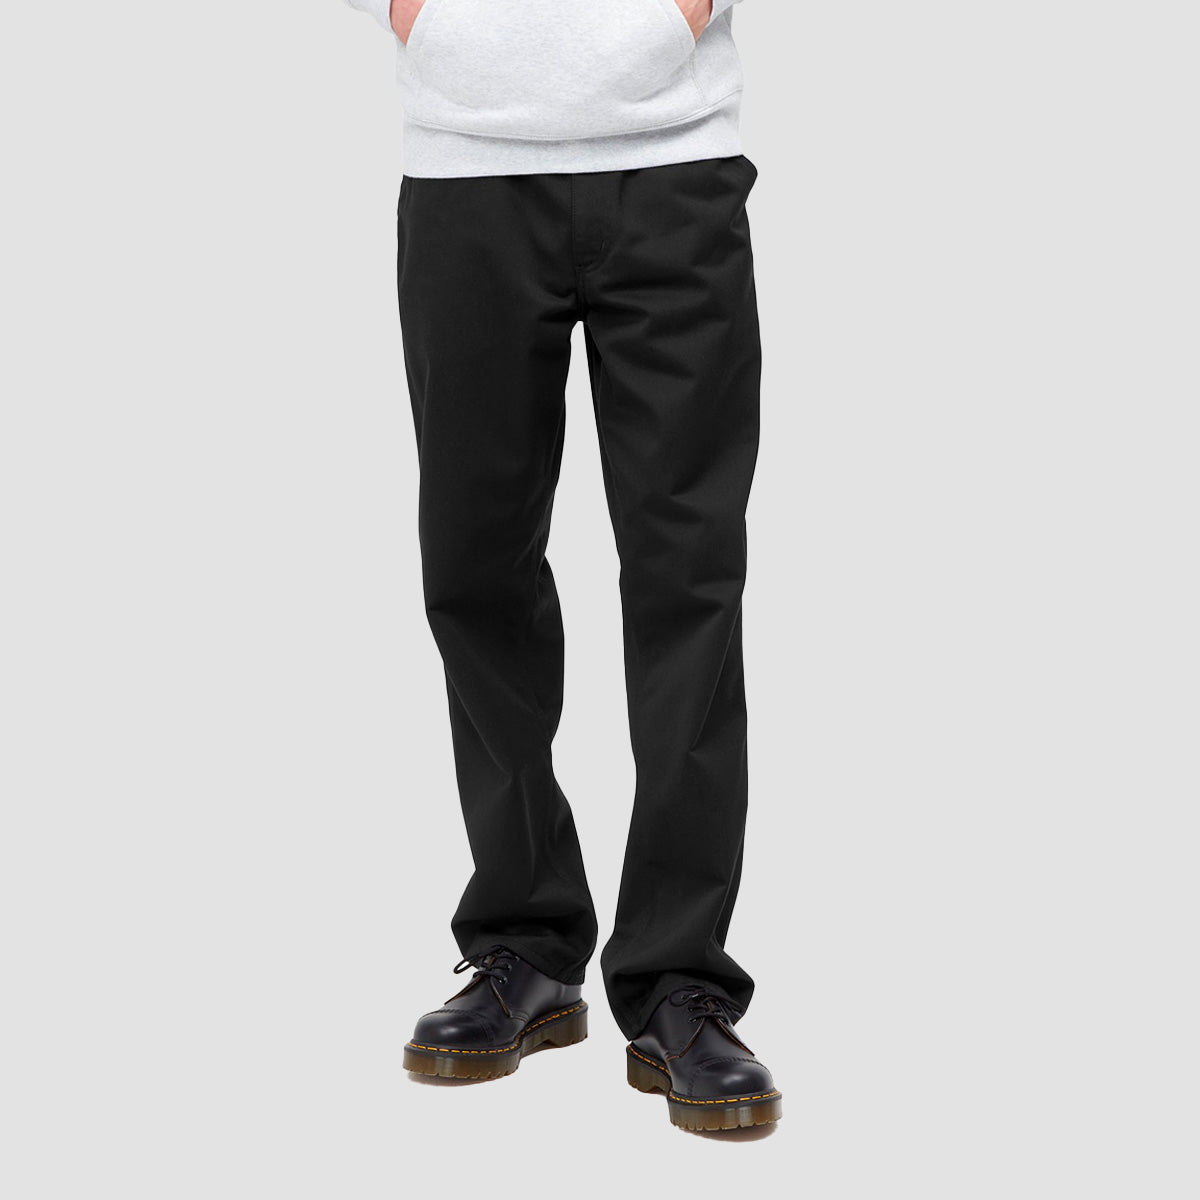 Carhartt WIP Simple Pants Black Rinsed